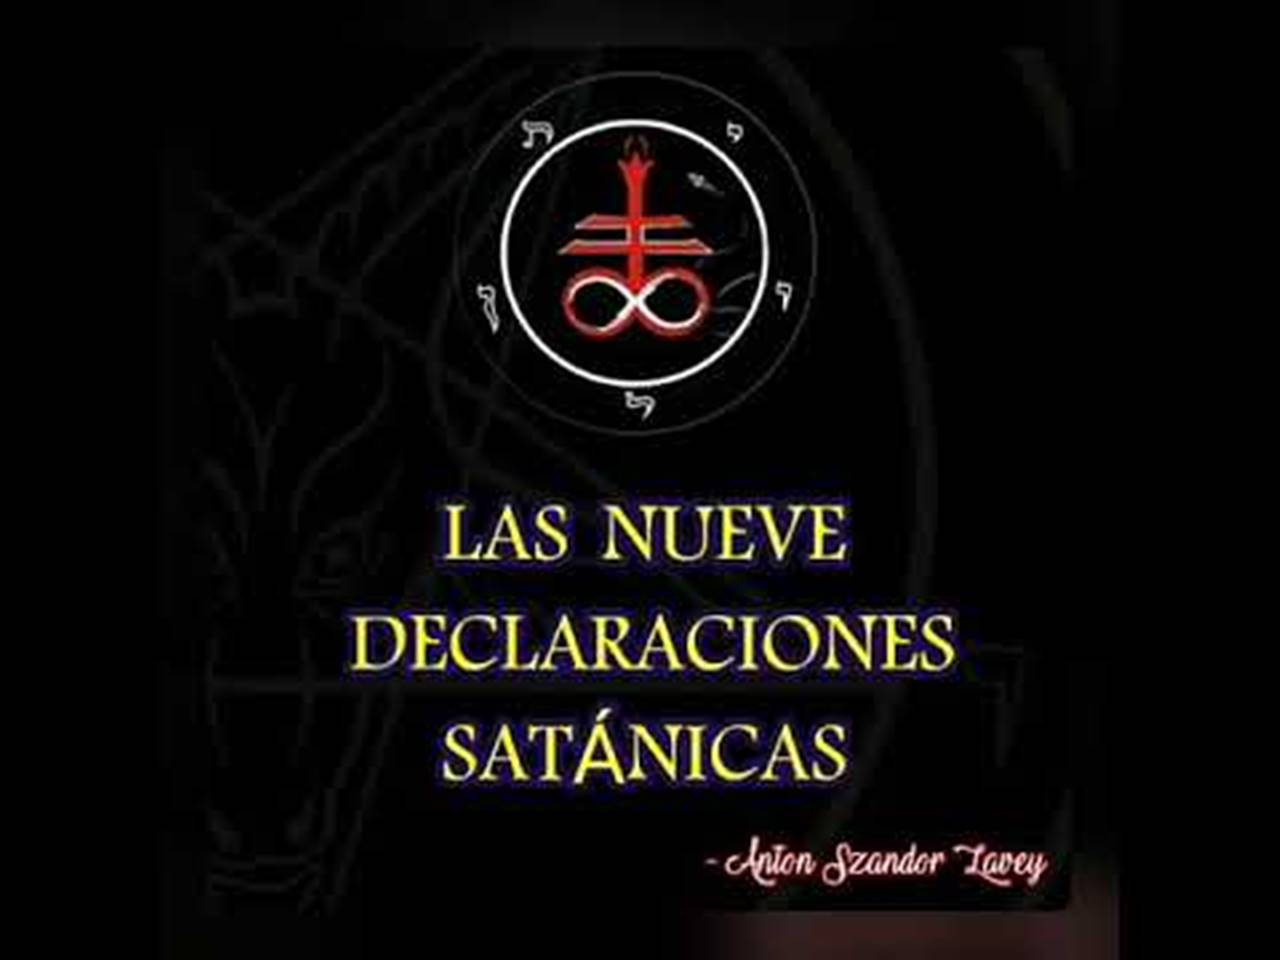 Las nueve declaraciones satánicas